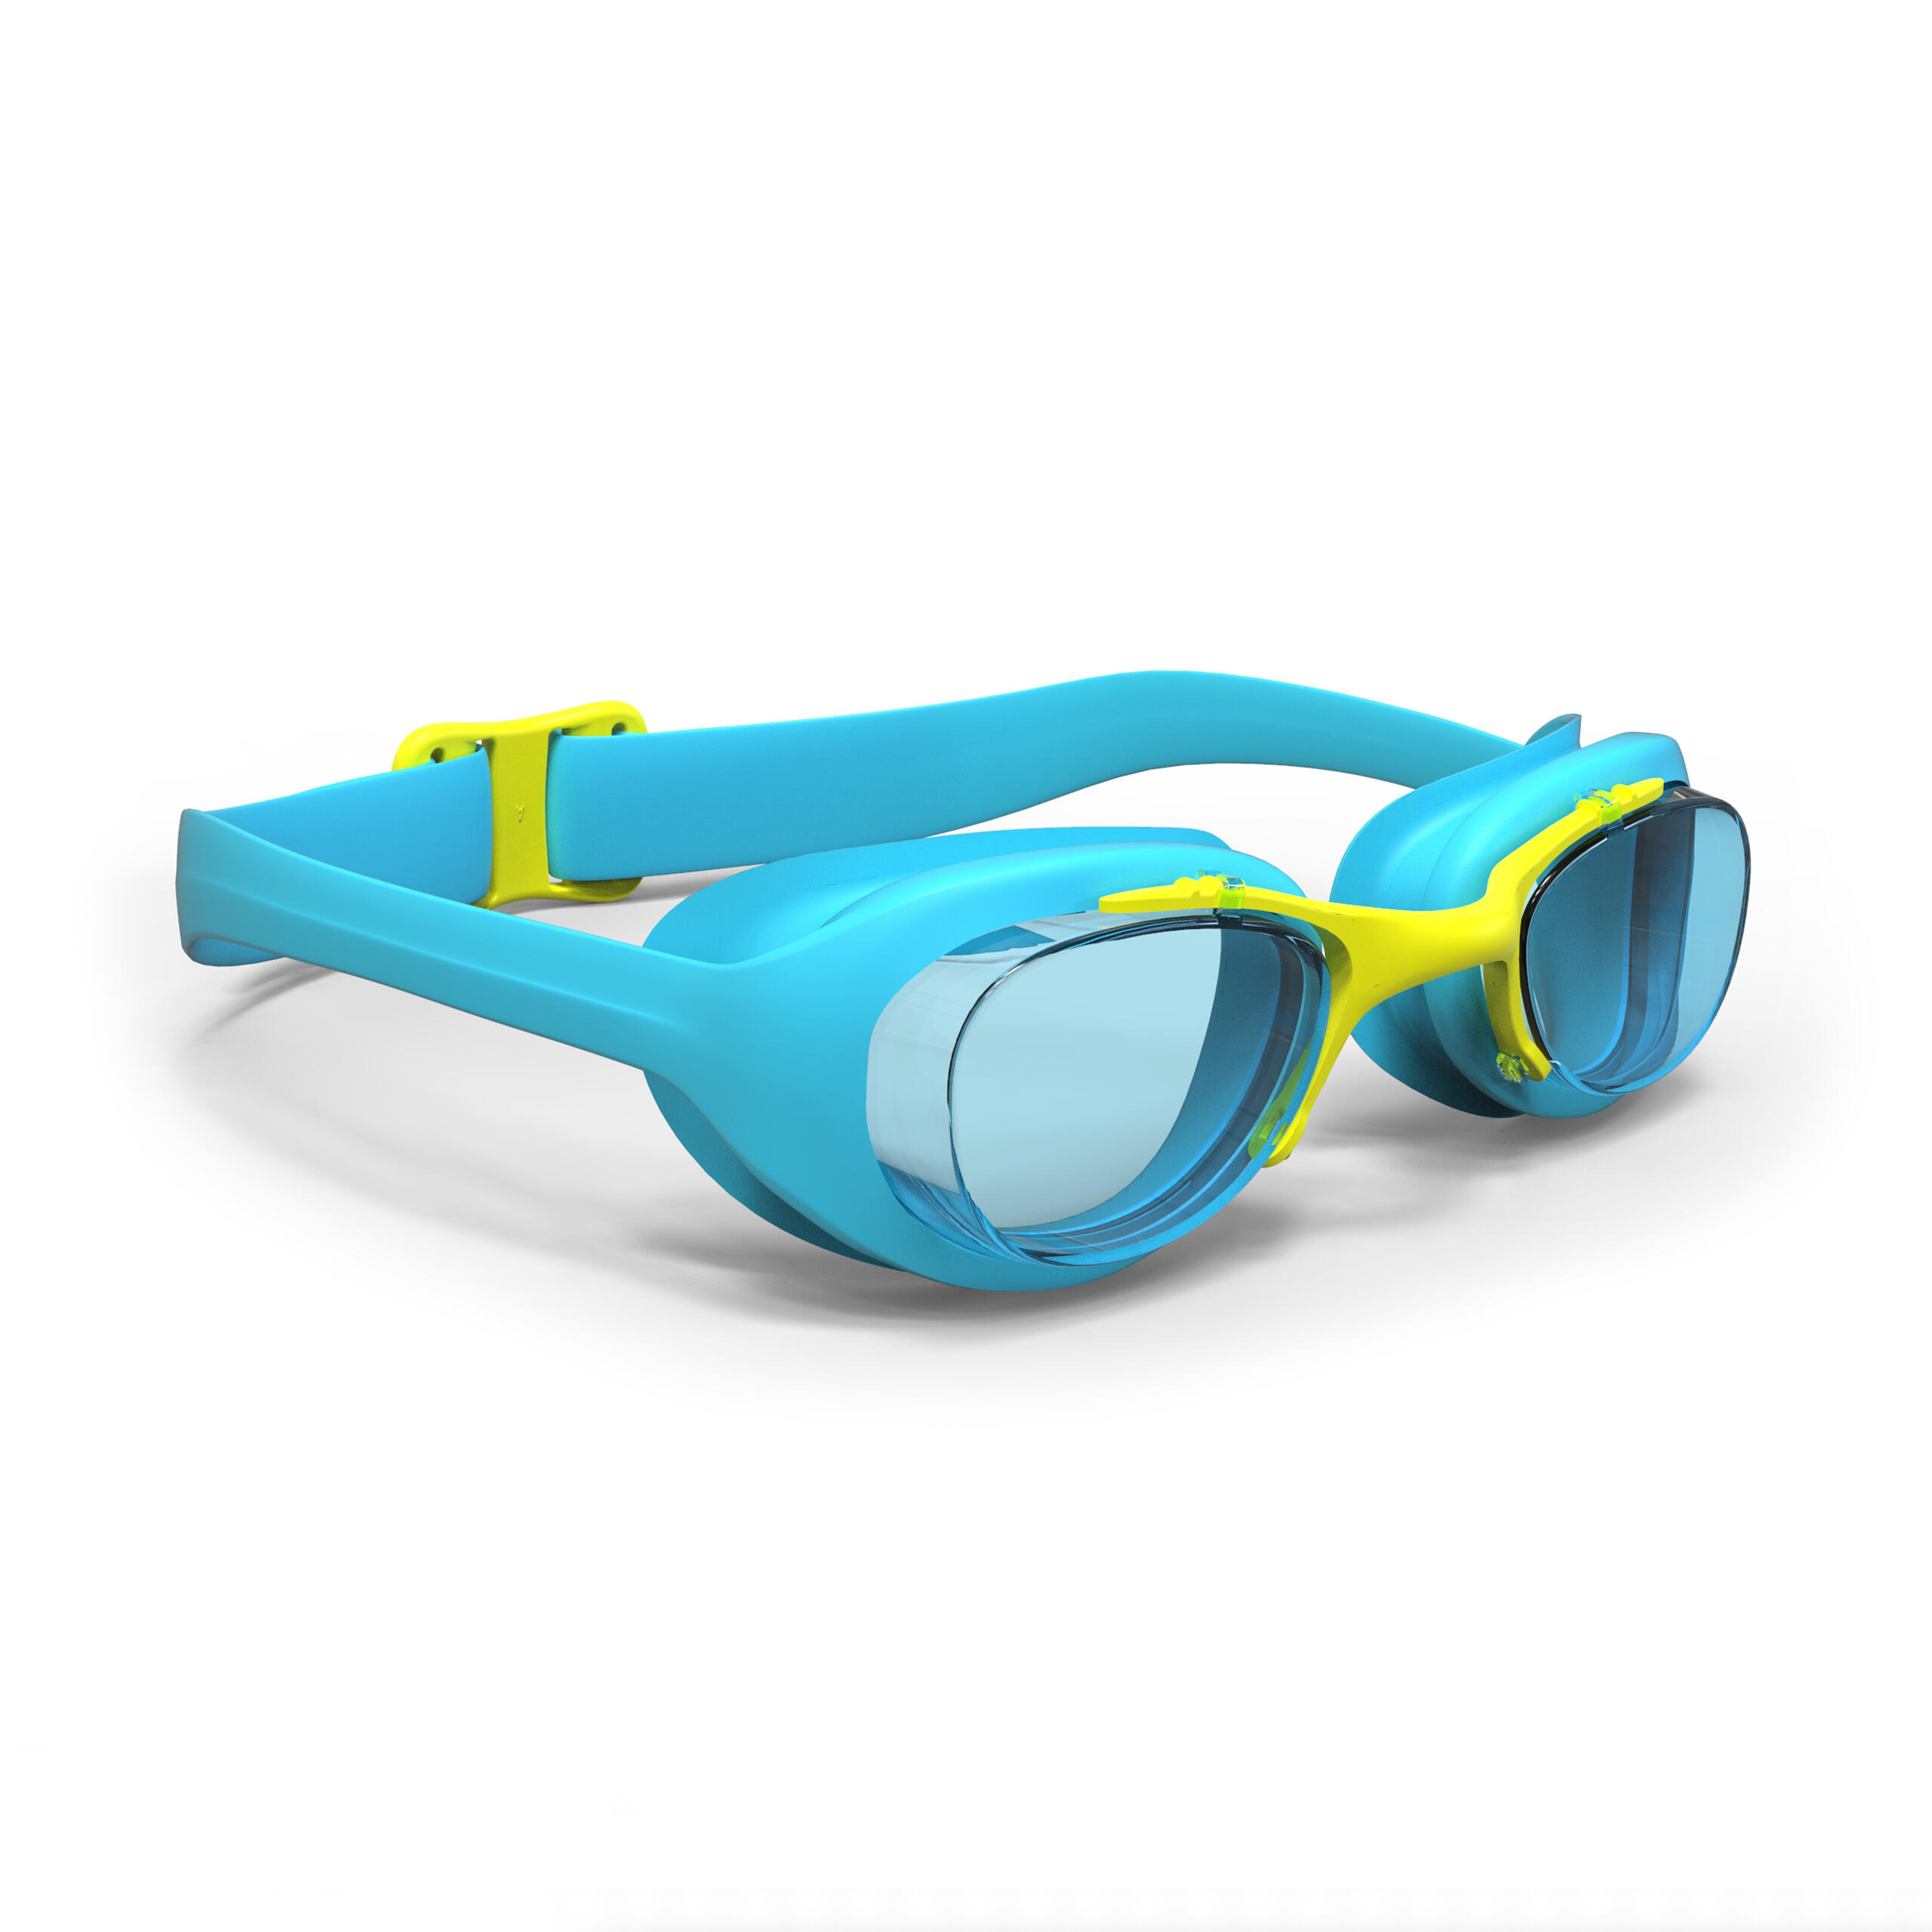 Ochelari înot 100 Xbase Mărimea S Lentile Transparente Albastru-Galben decathlon.ro imagine 2022